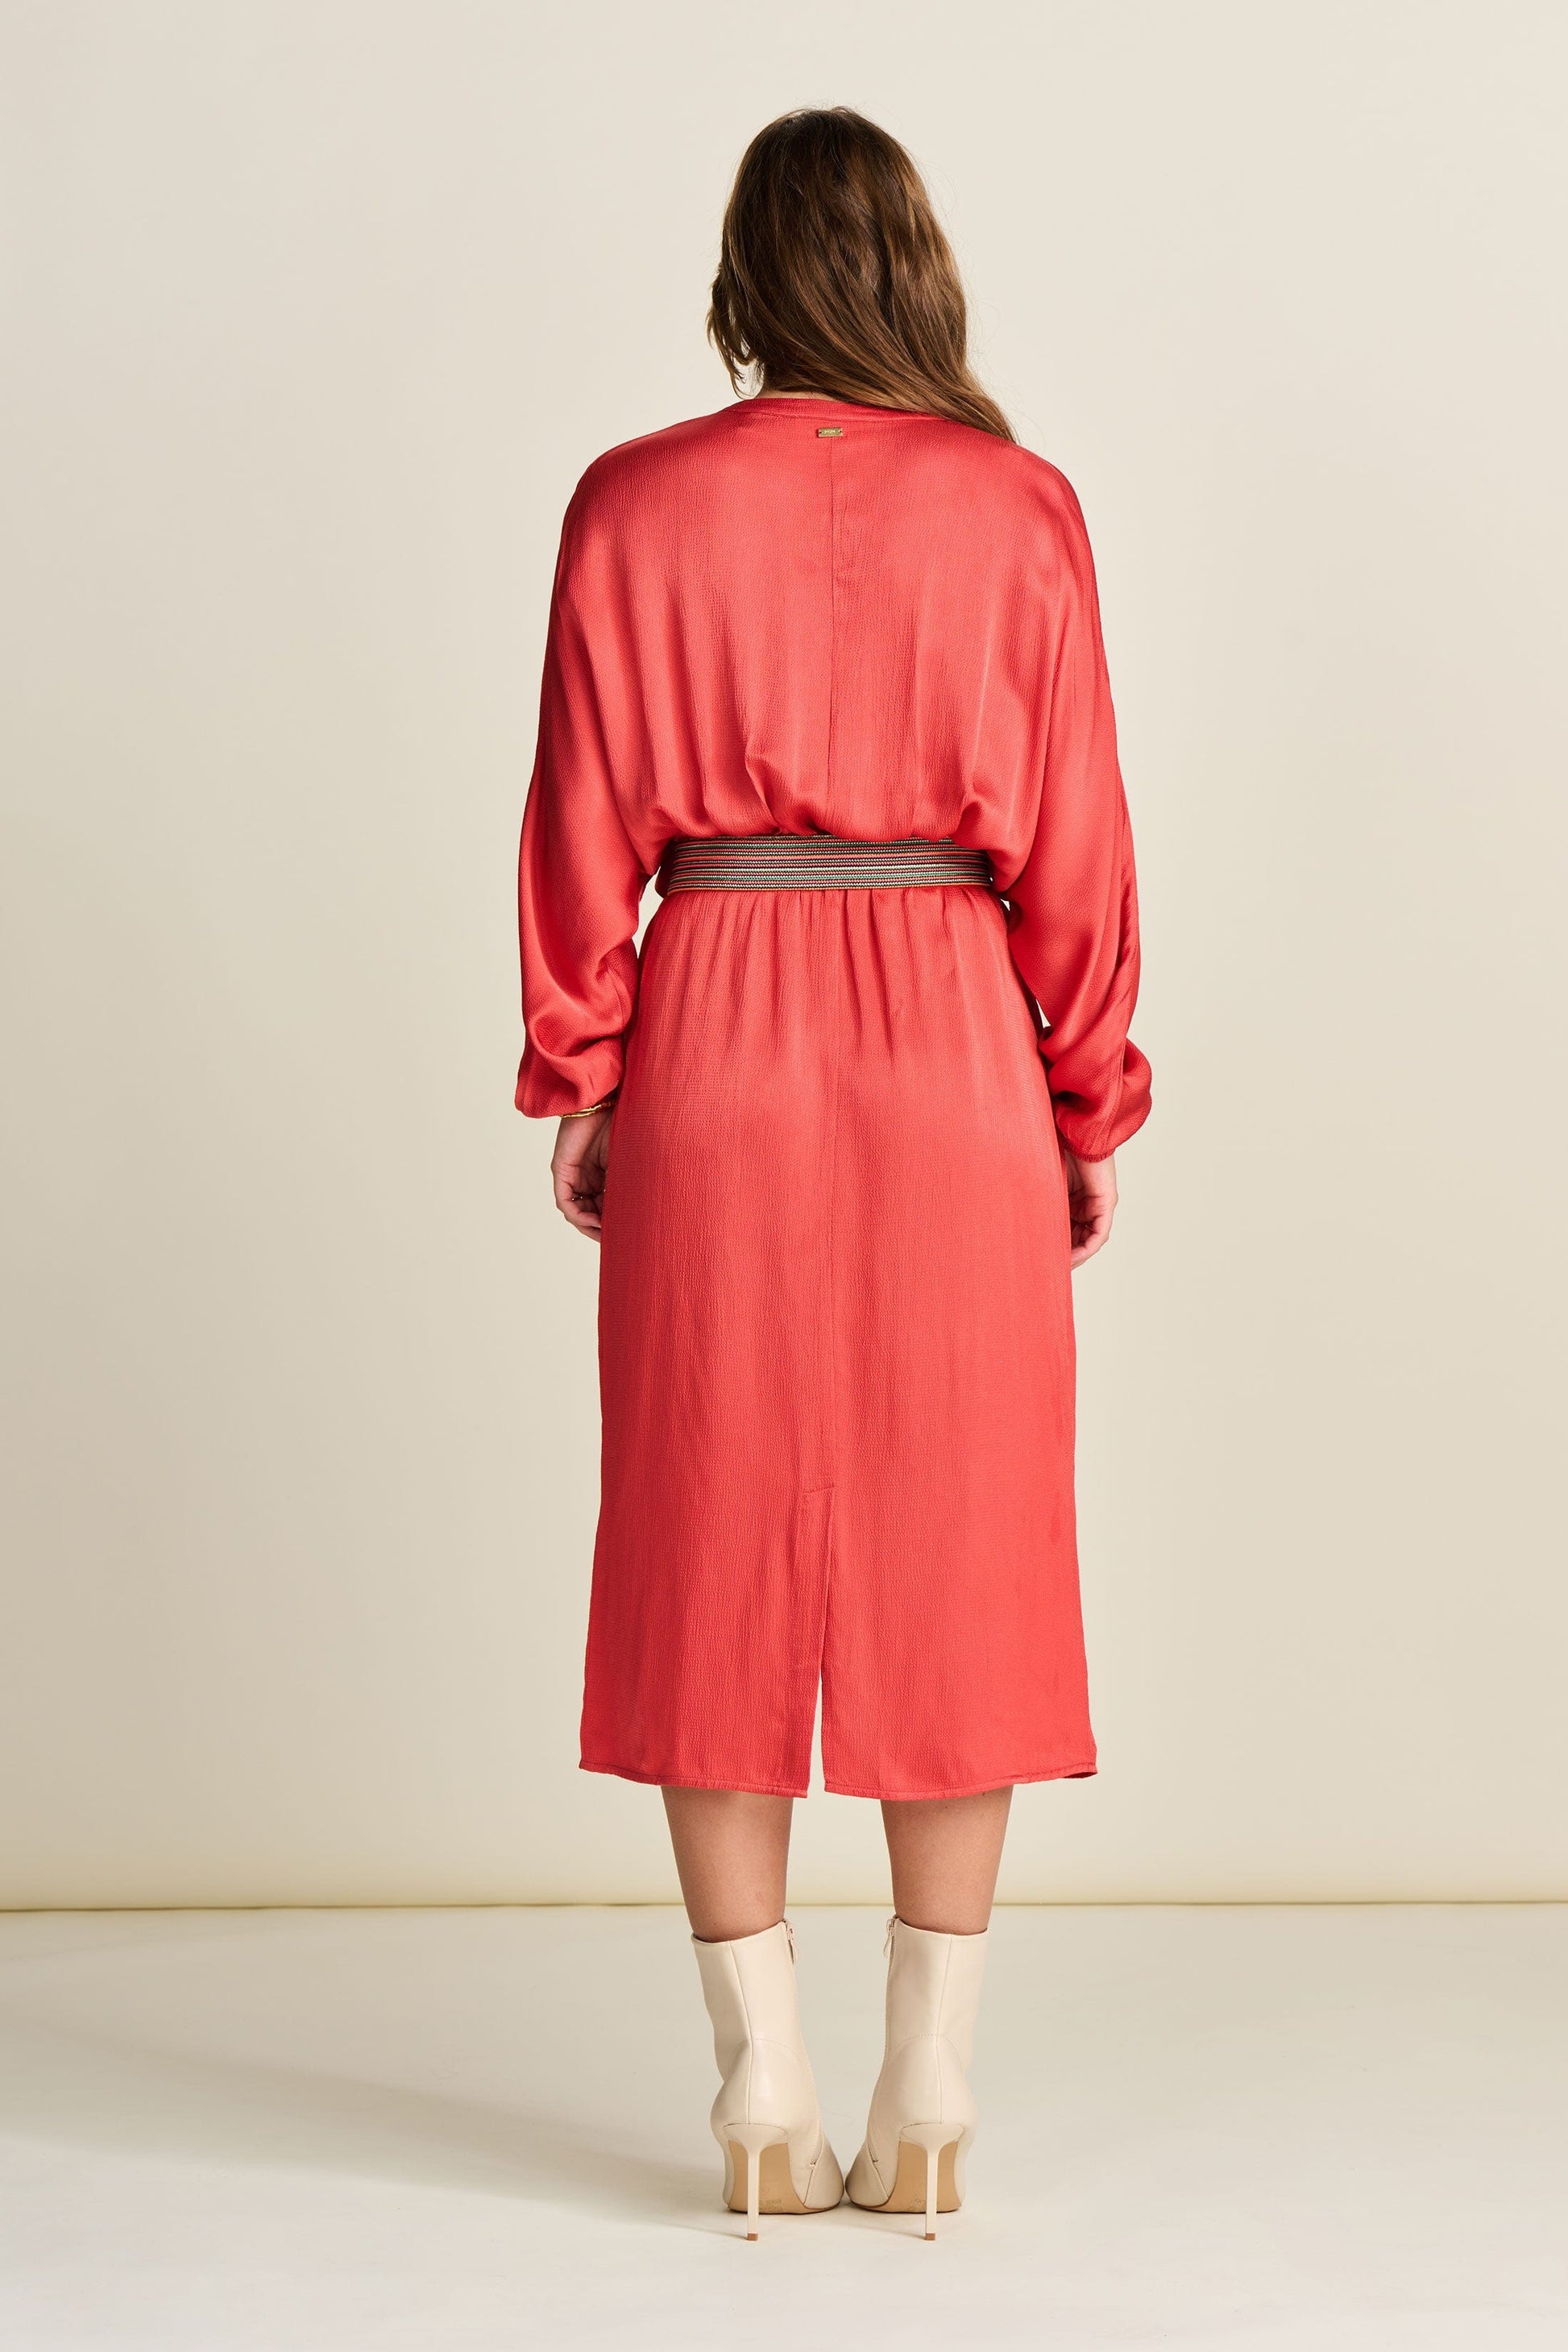 POM Amsterdam Dresses ROBE - Baked Red